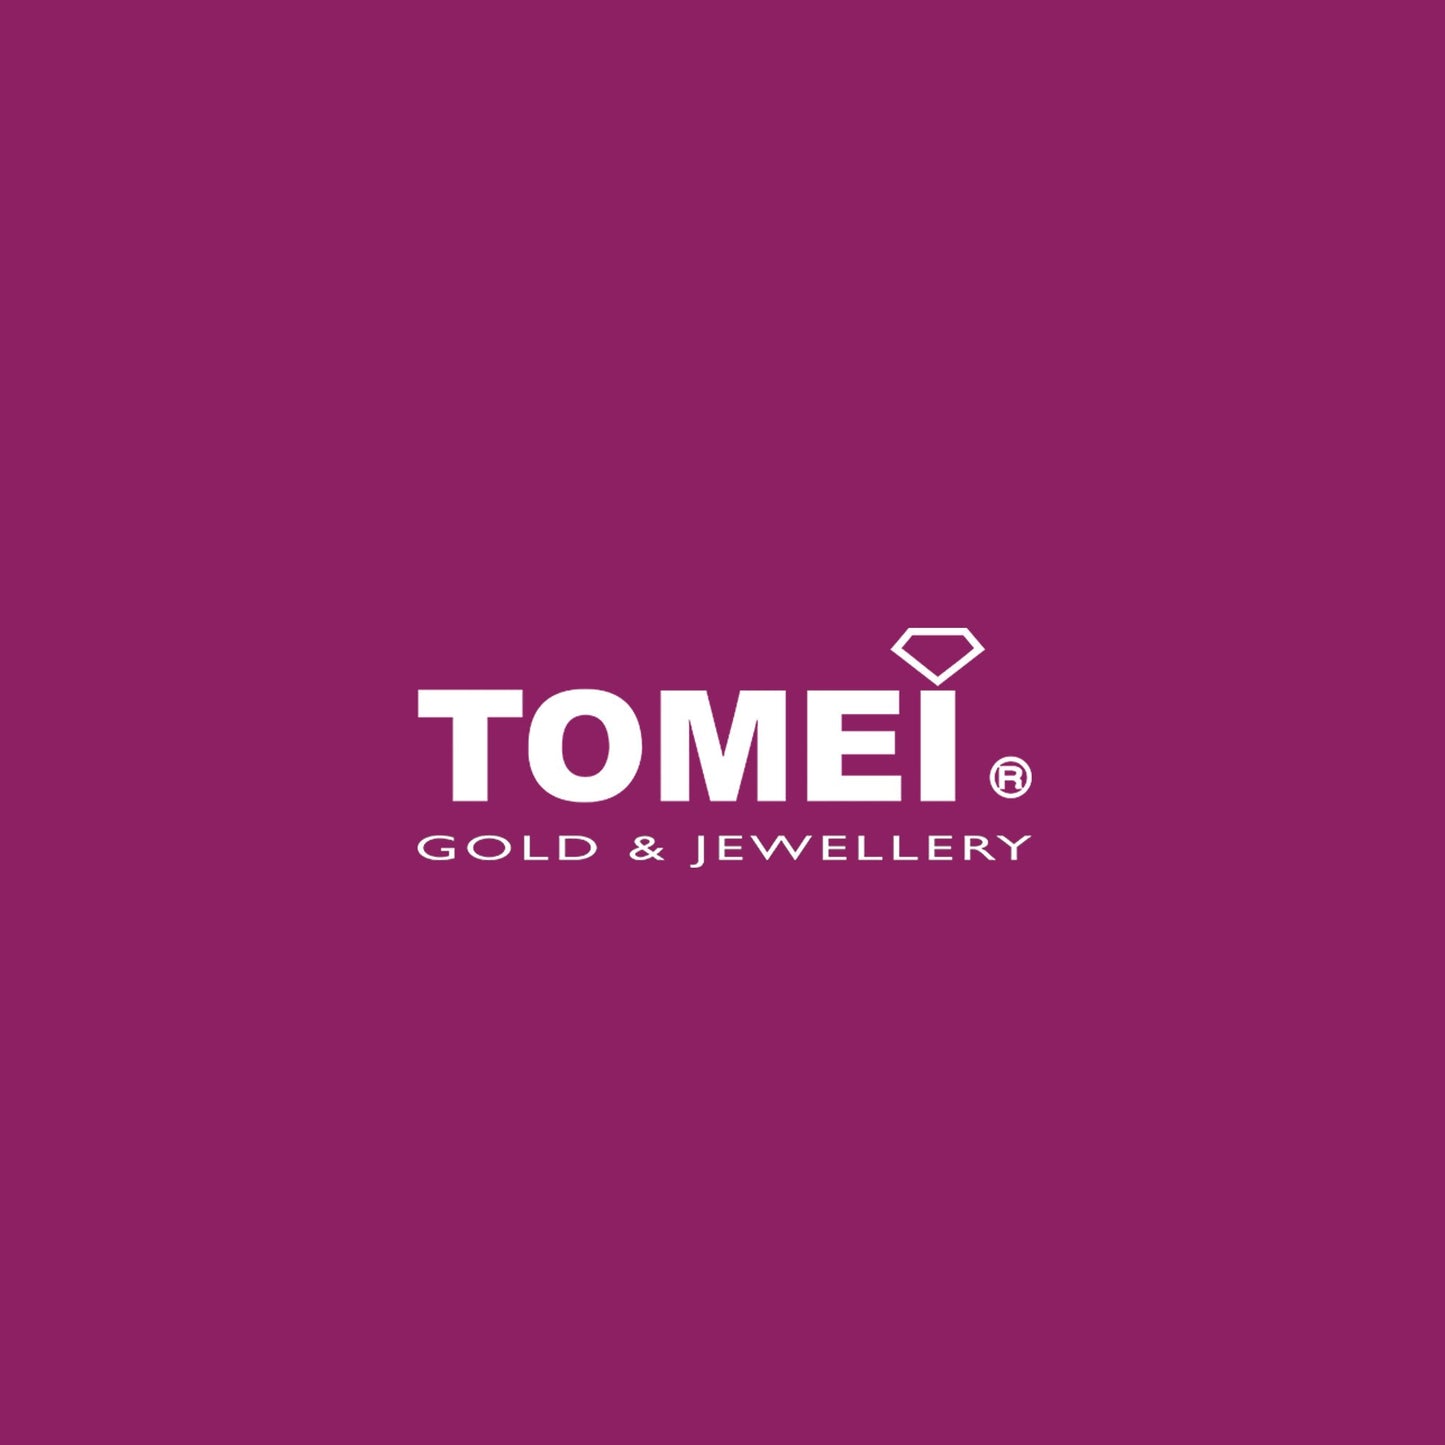 TOMEI Lusso Italia Trio-Tone Long Necklace, Yellow Gold 916